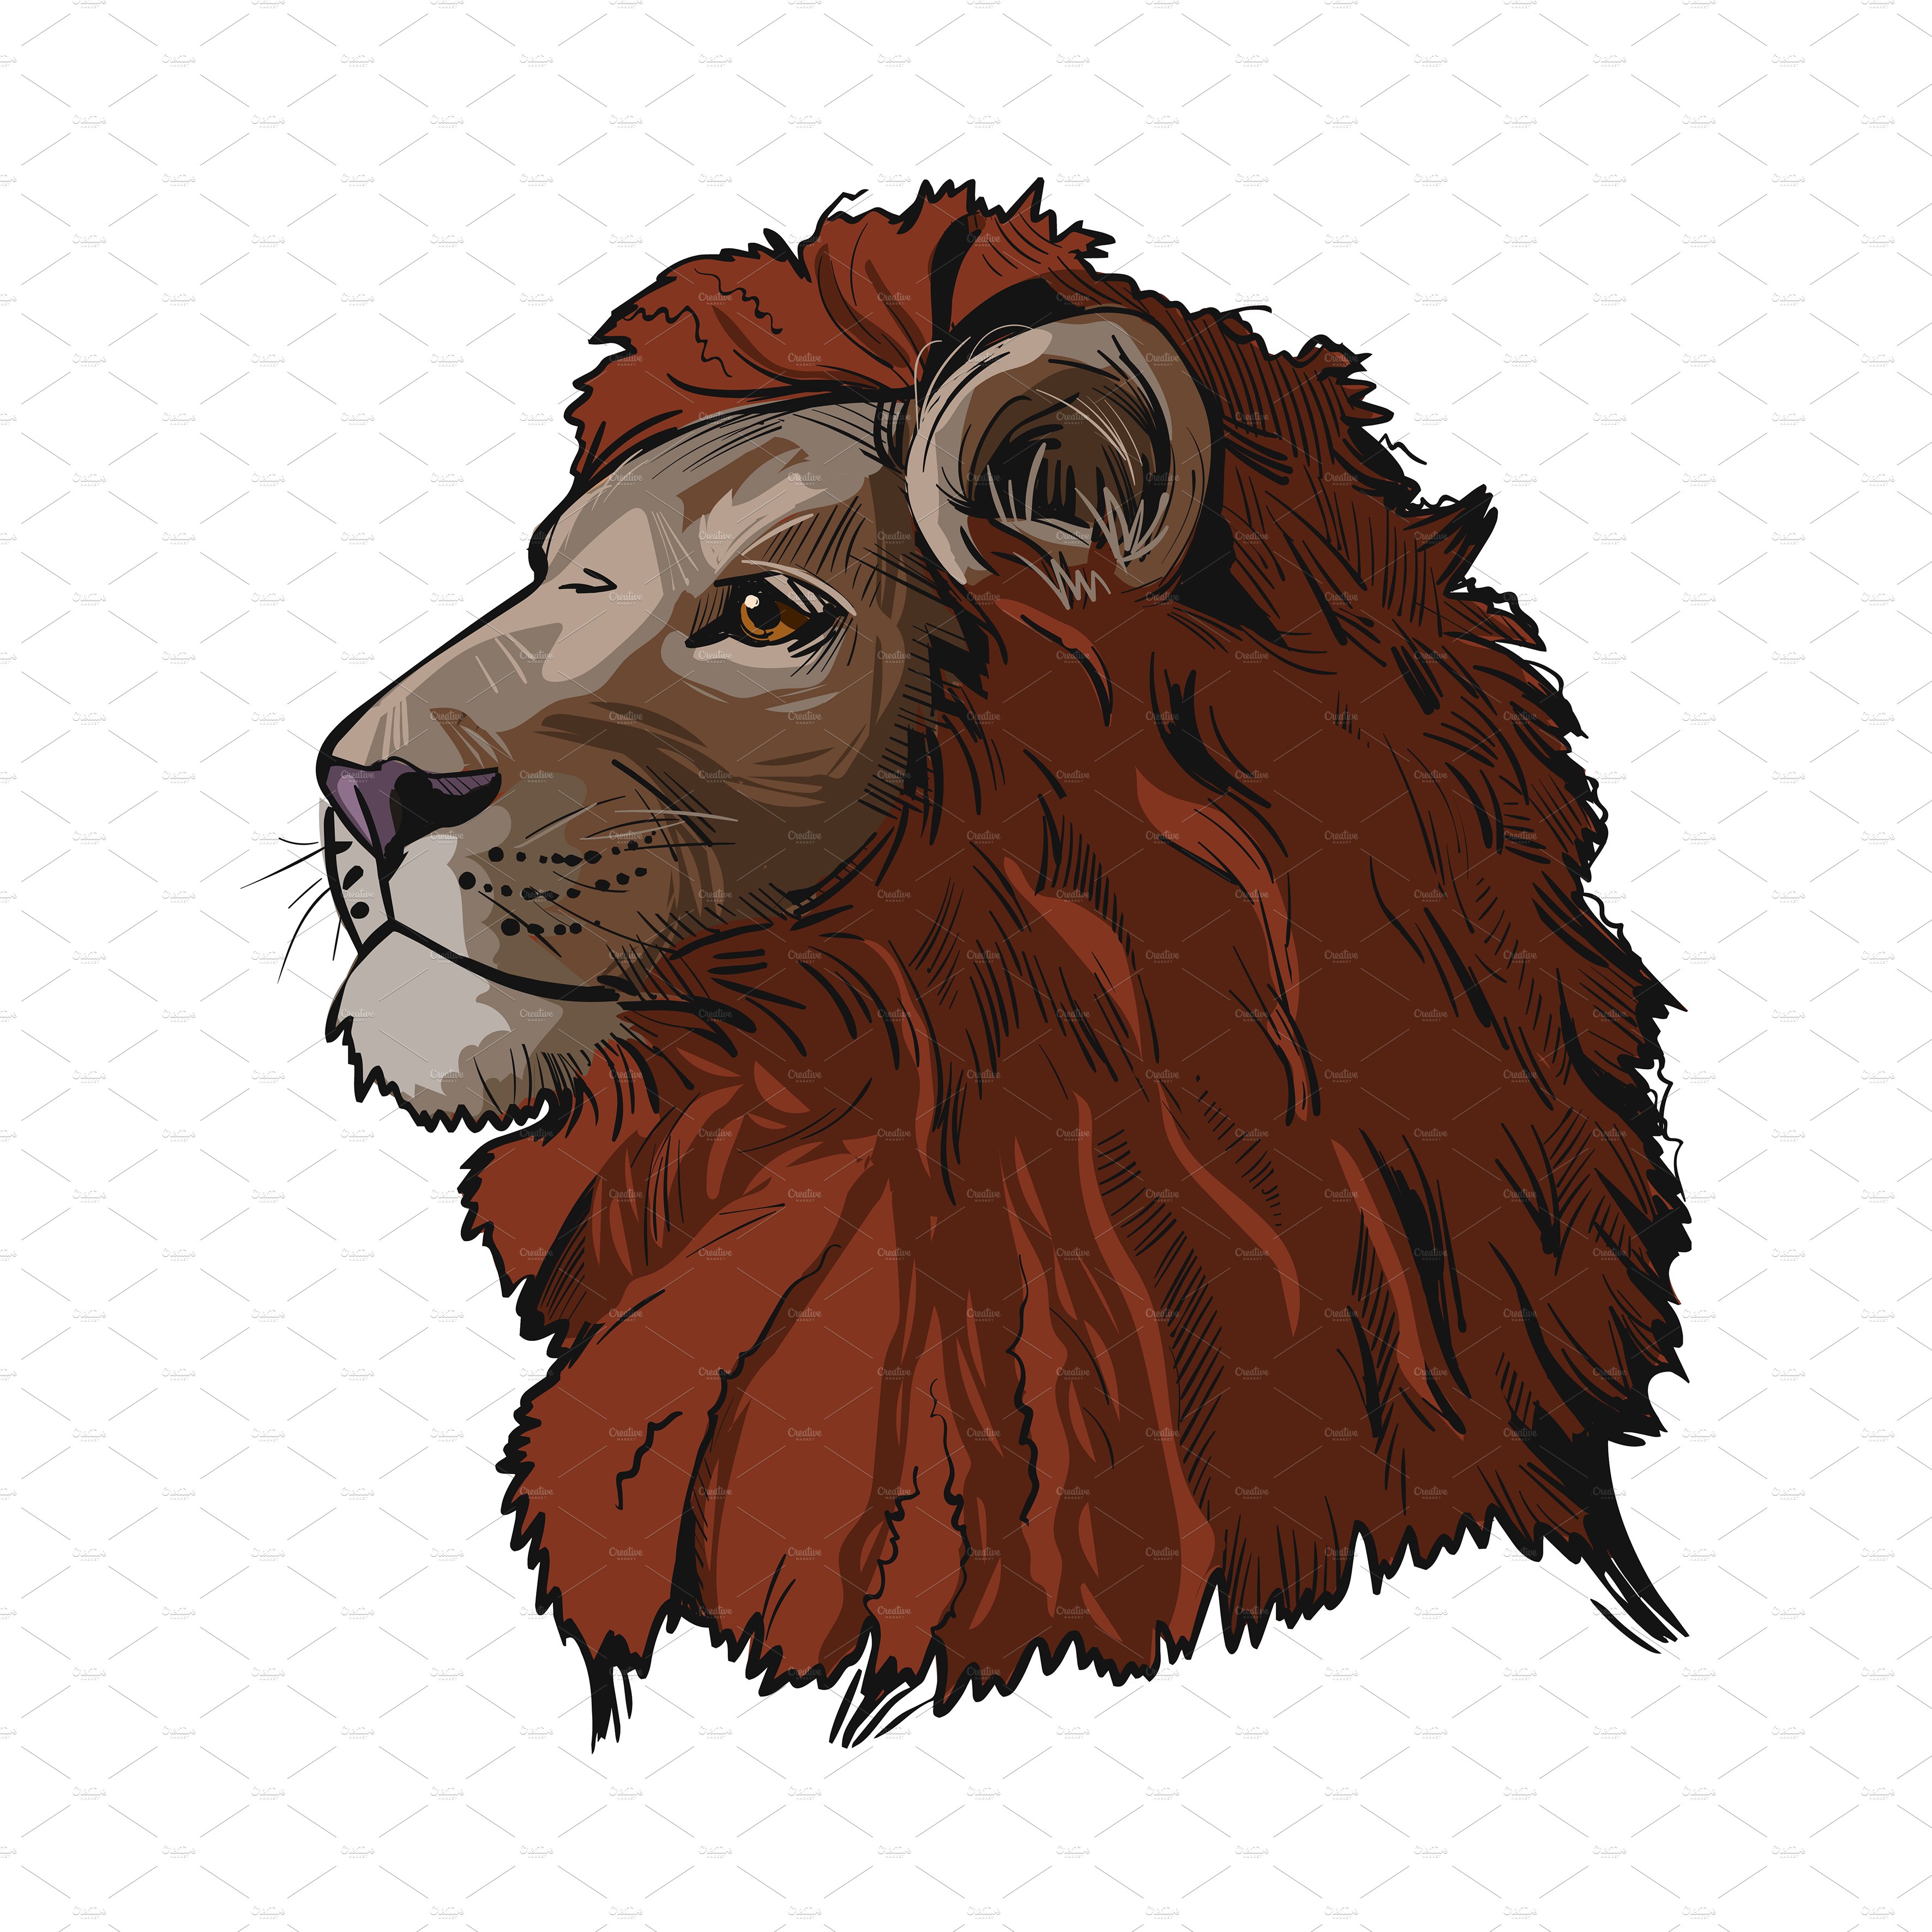 Proud lion in a color.